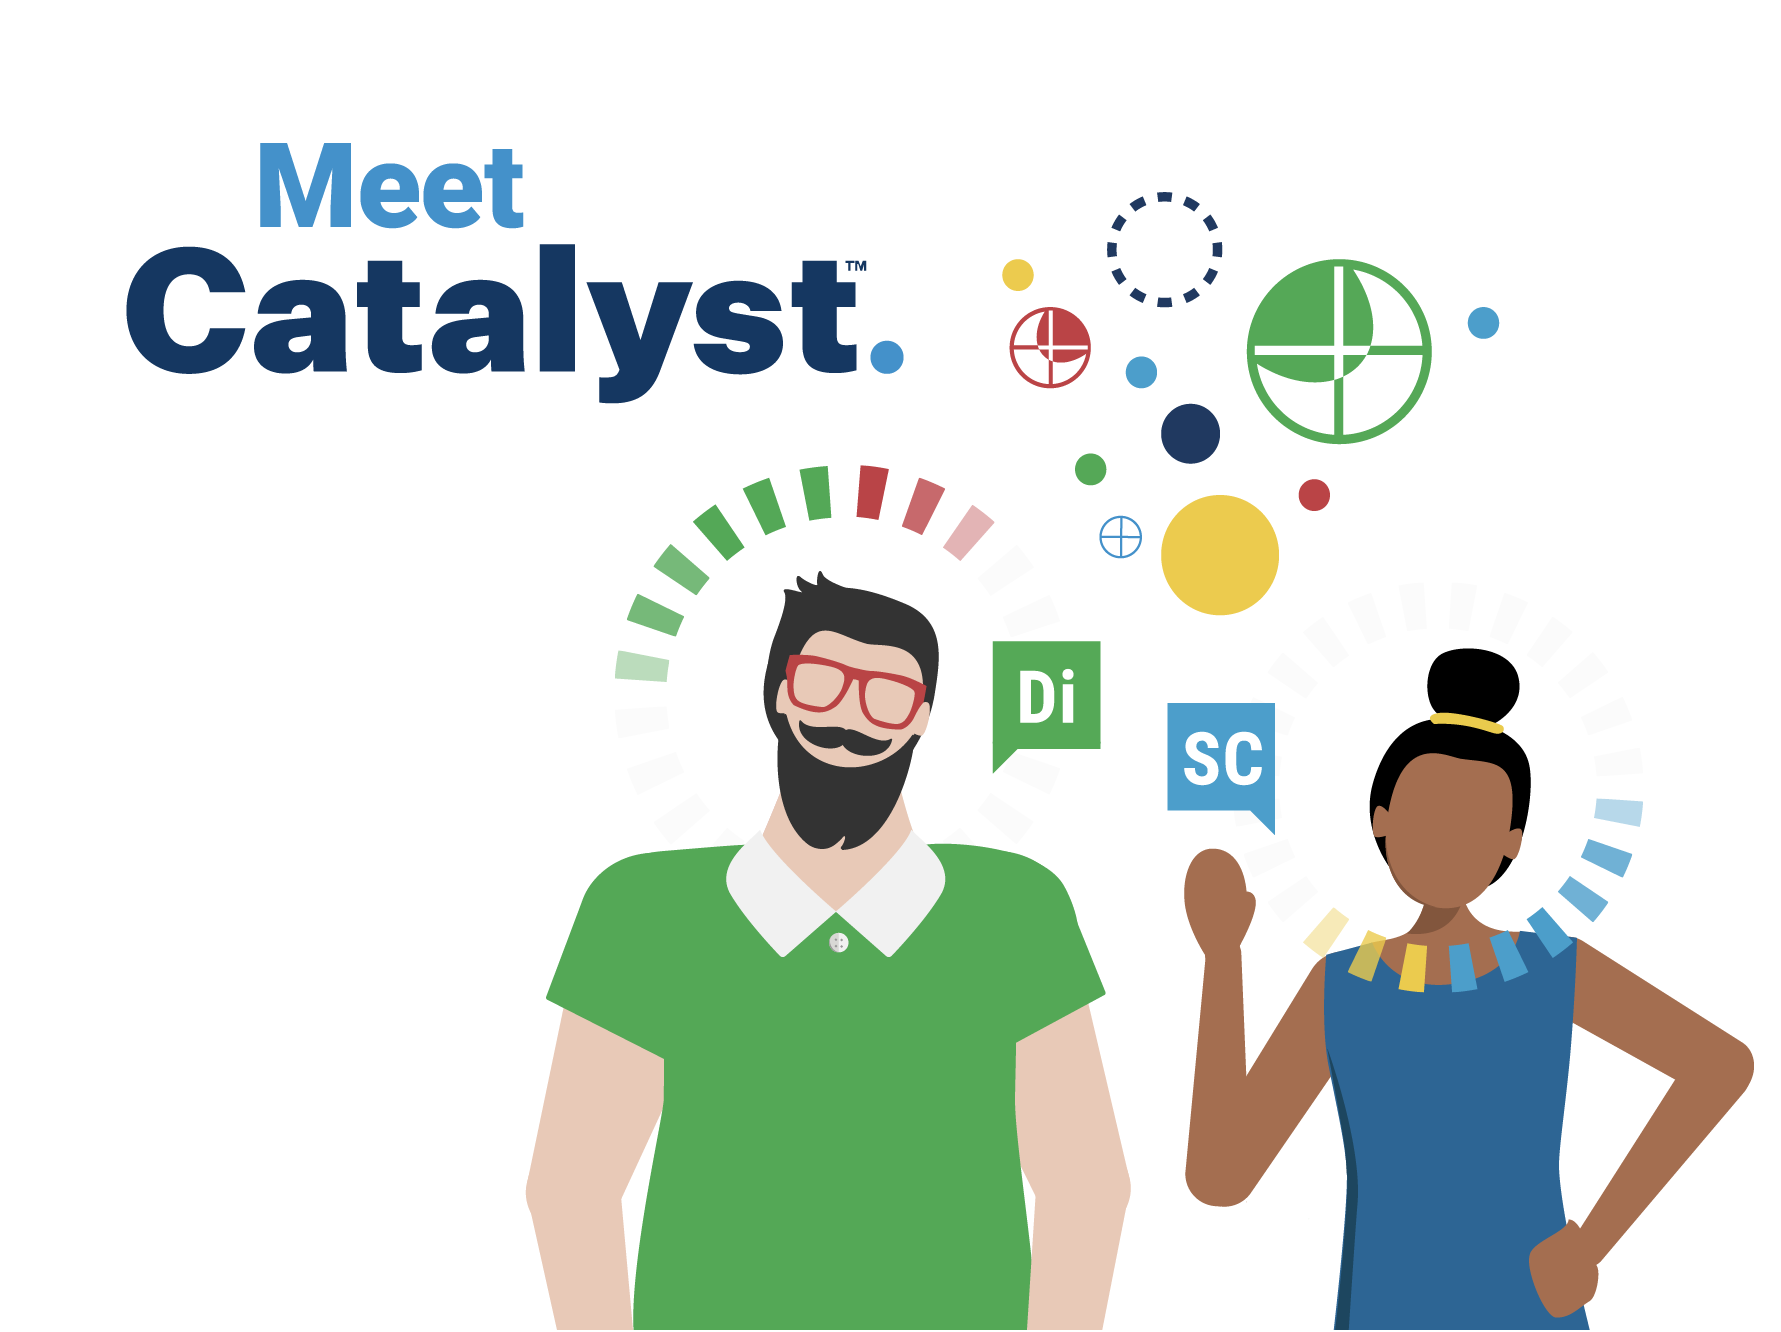 Meet Catalyst